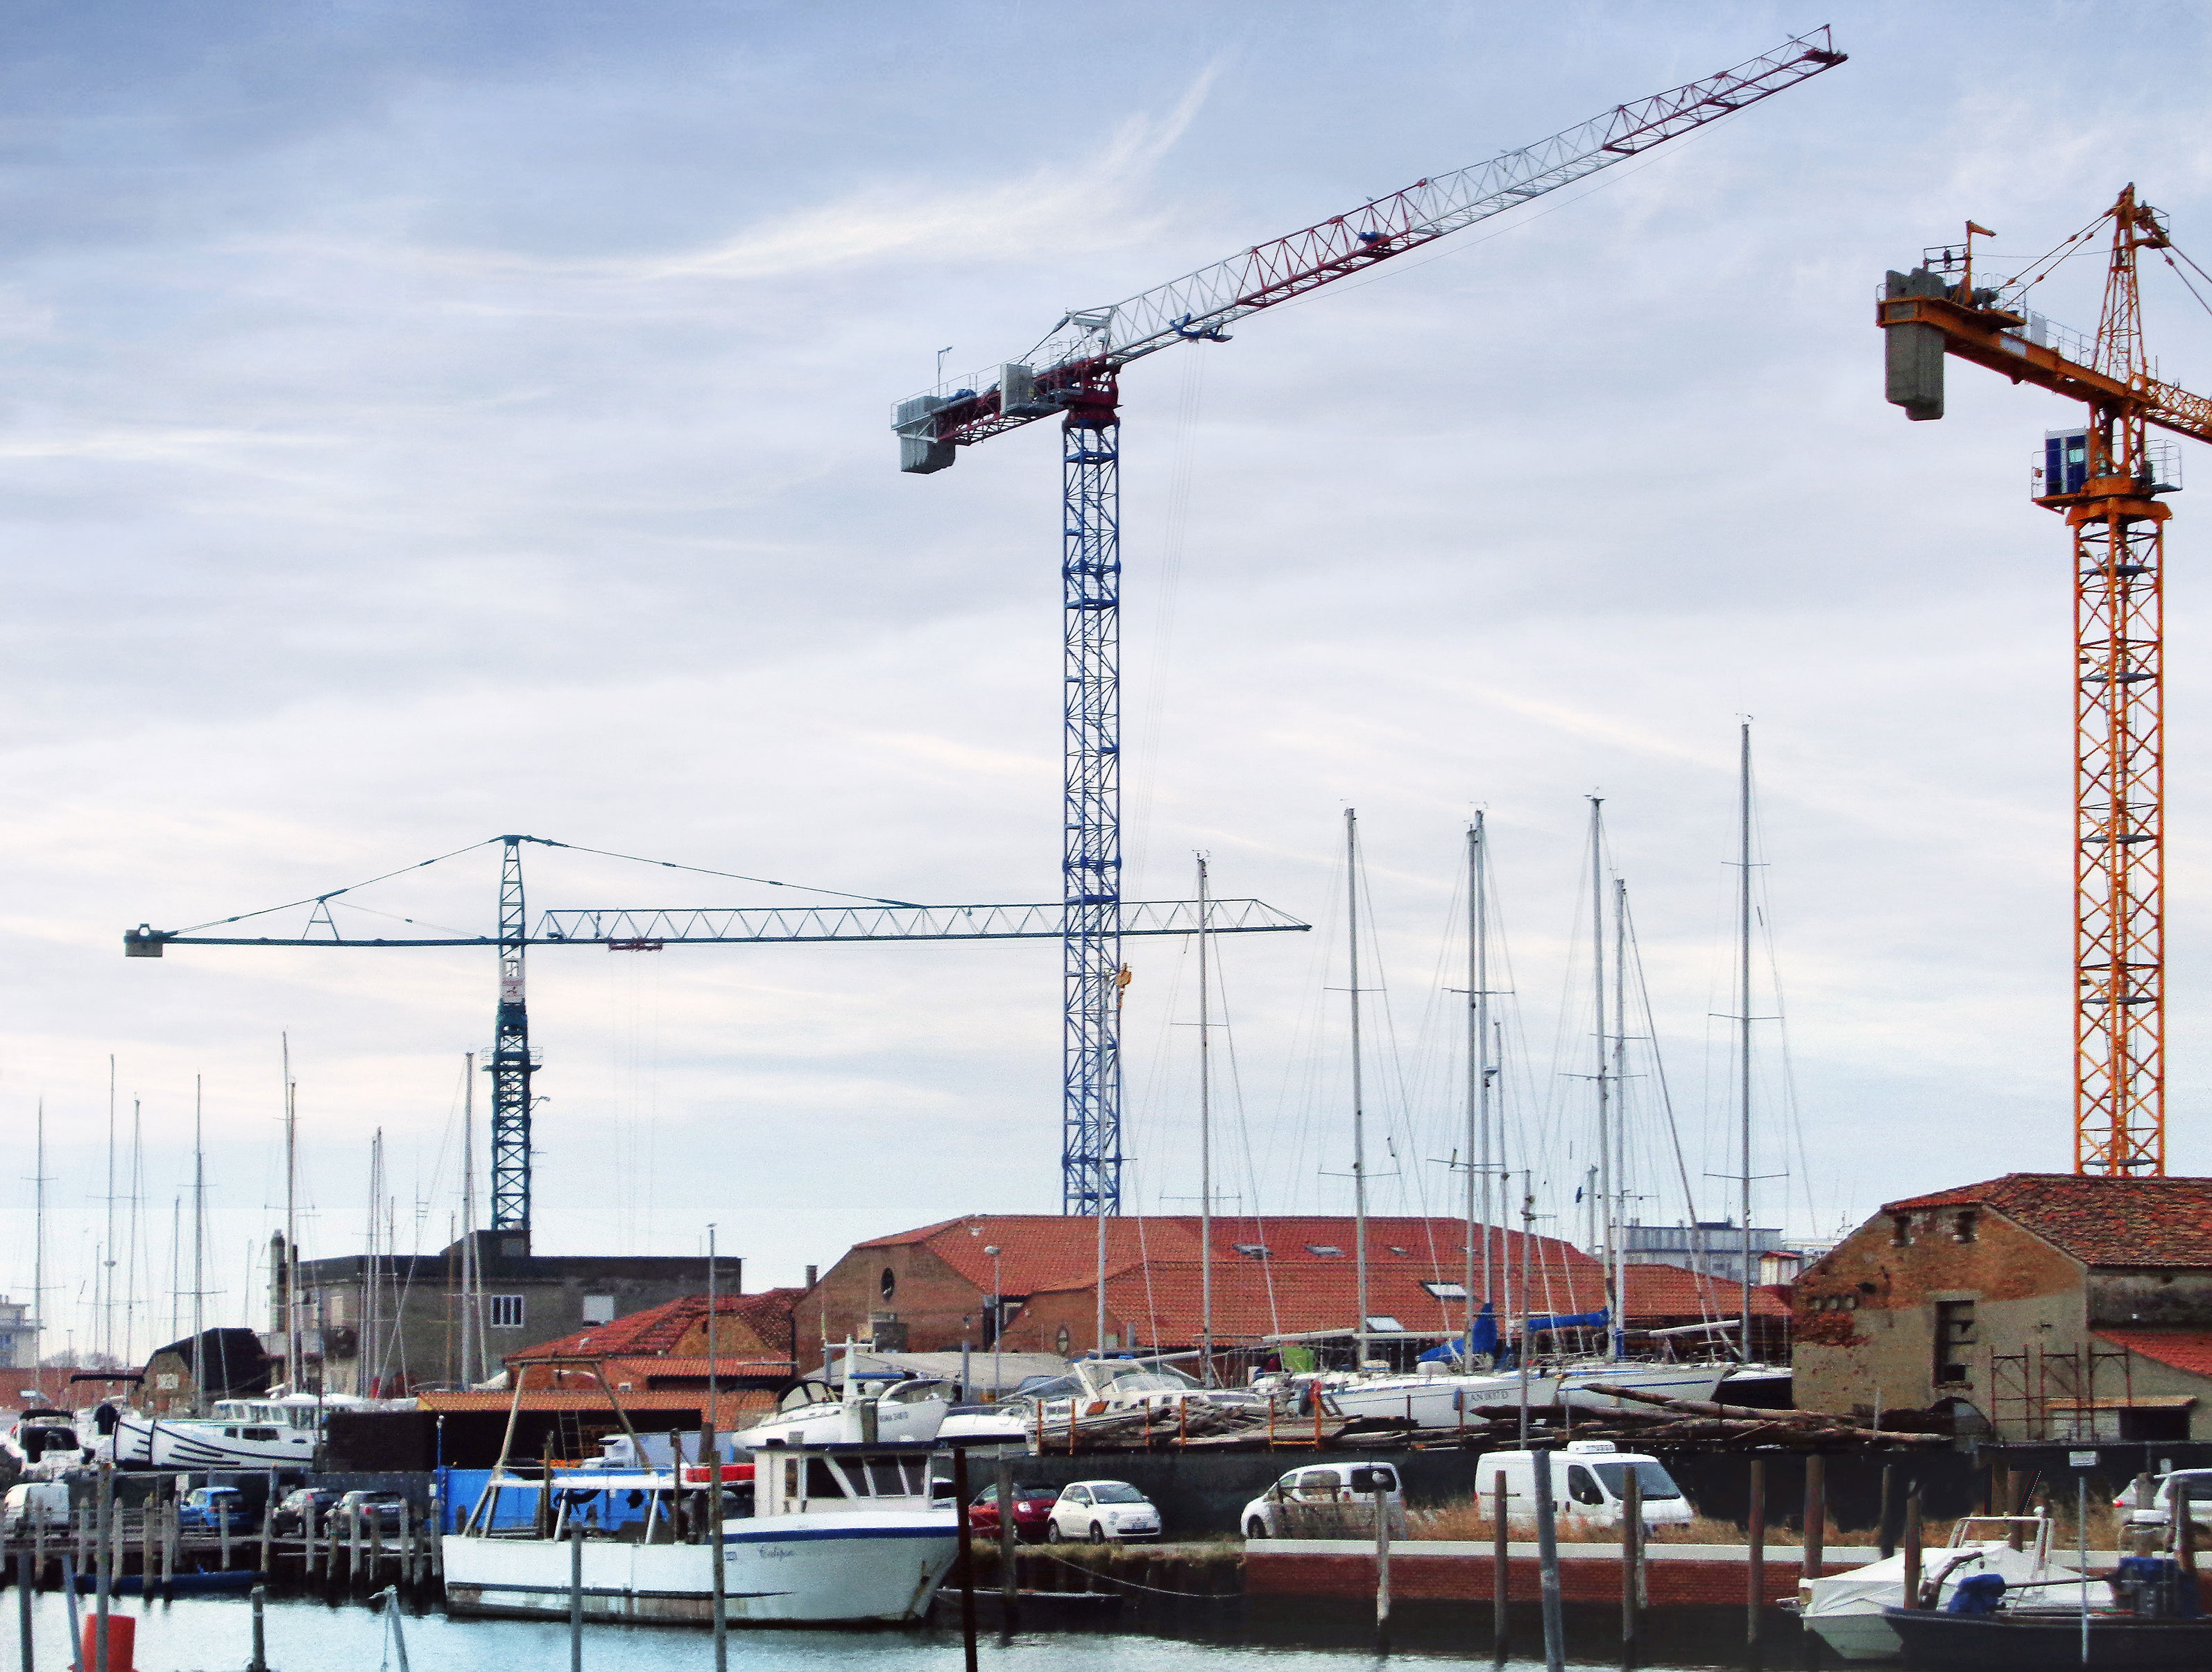 raimondi-mrt223-tower-crane-erected-in-chioggia-italy